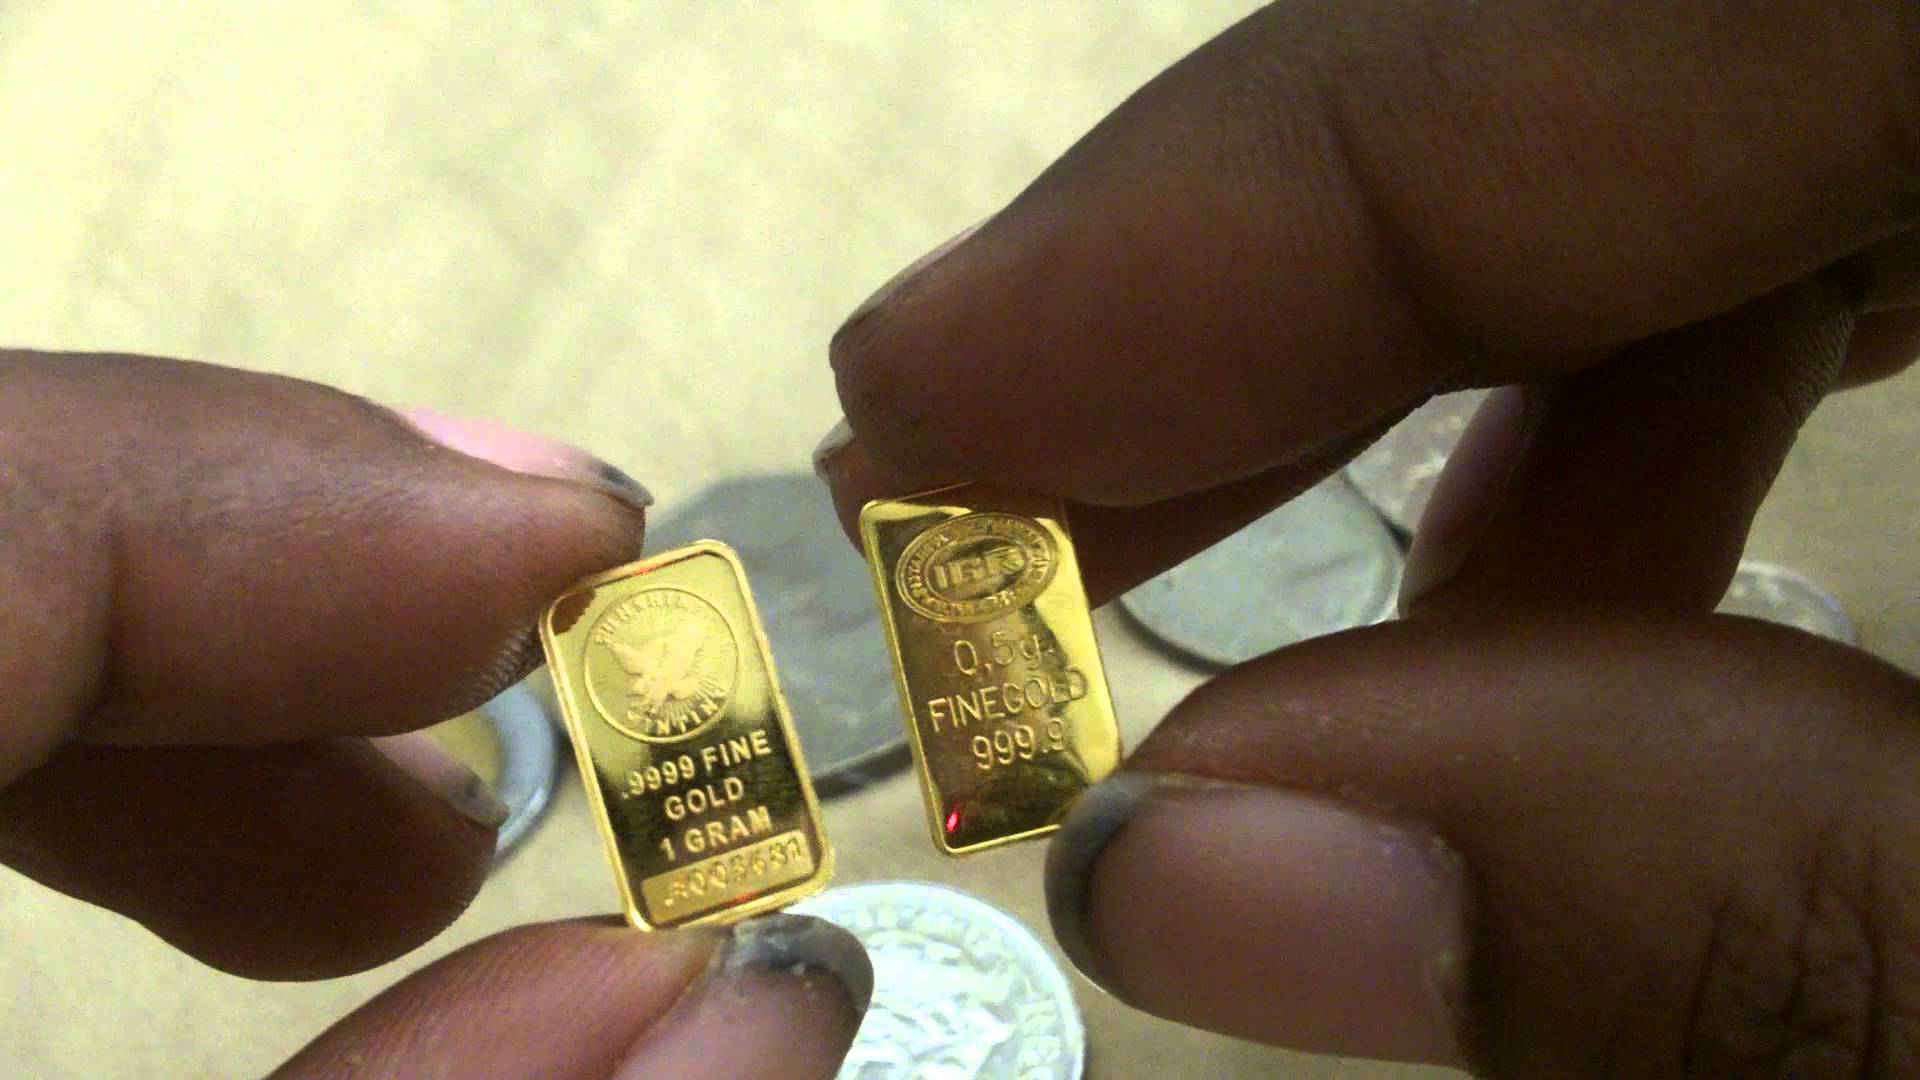 سبيكة مصنوعة من الذهب والفضة بنسبة 1 غرام من الذهب إلى 4 غرامات من الفضة